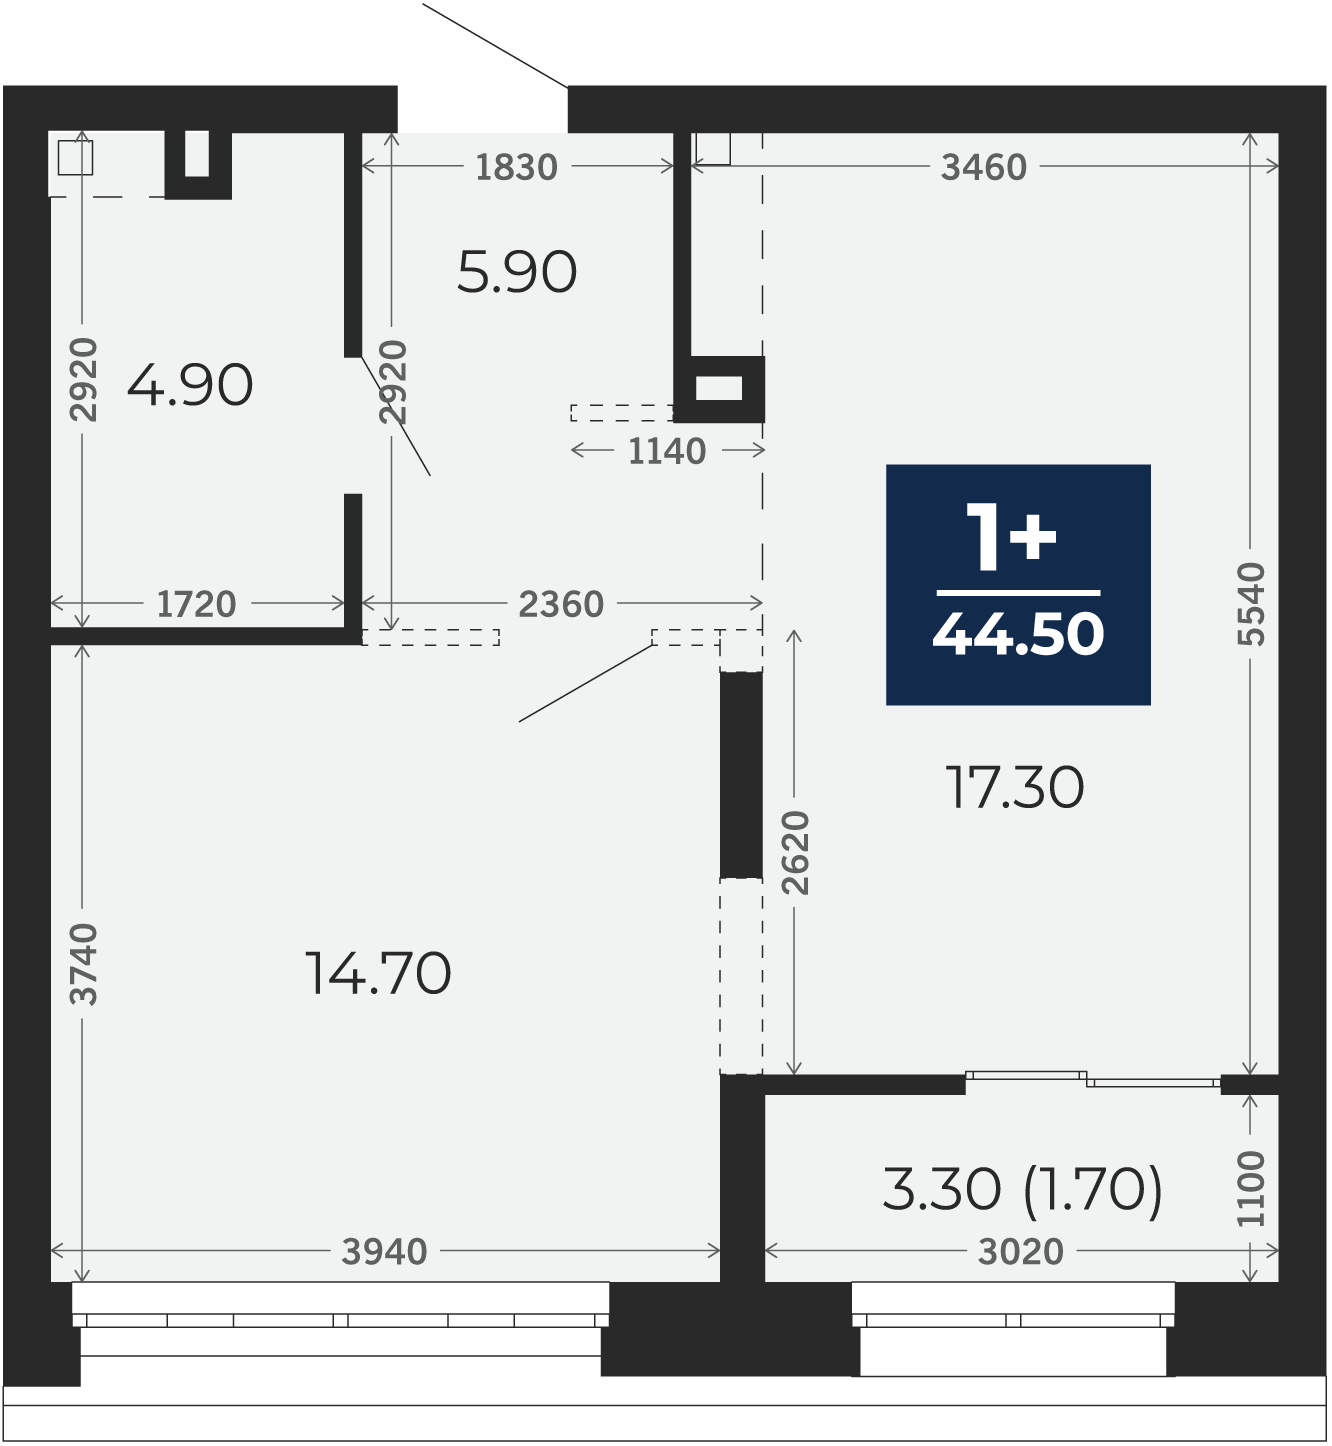 Квартира № 358, 1-комнатная, 44.5 кв. м, 2 этаж